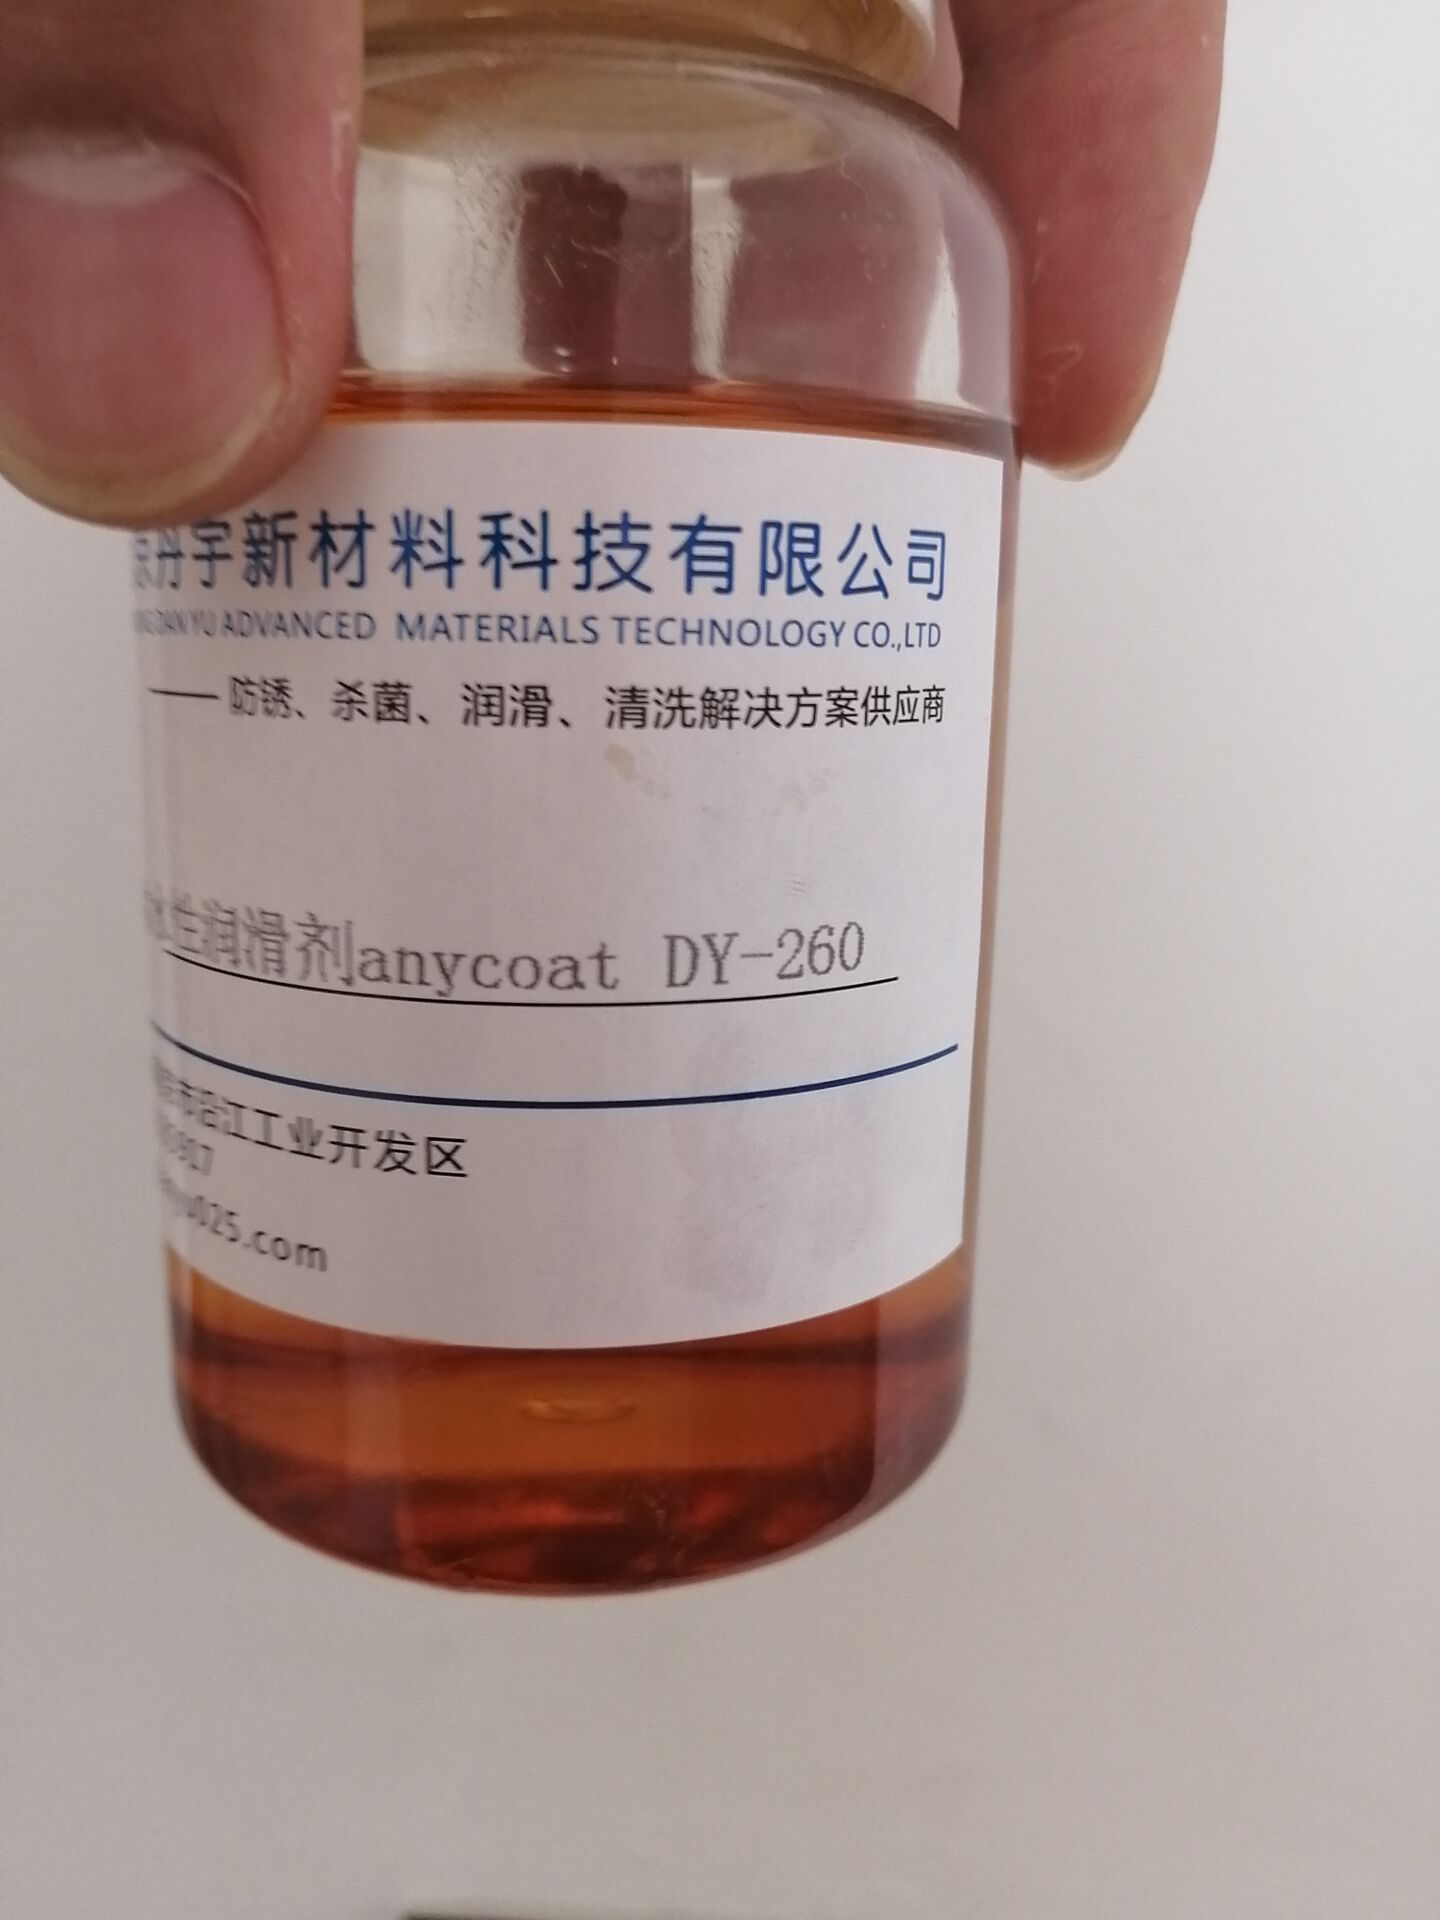 水性润滑剂生产厂家 水性润滑剂DY-260图片